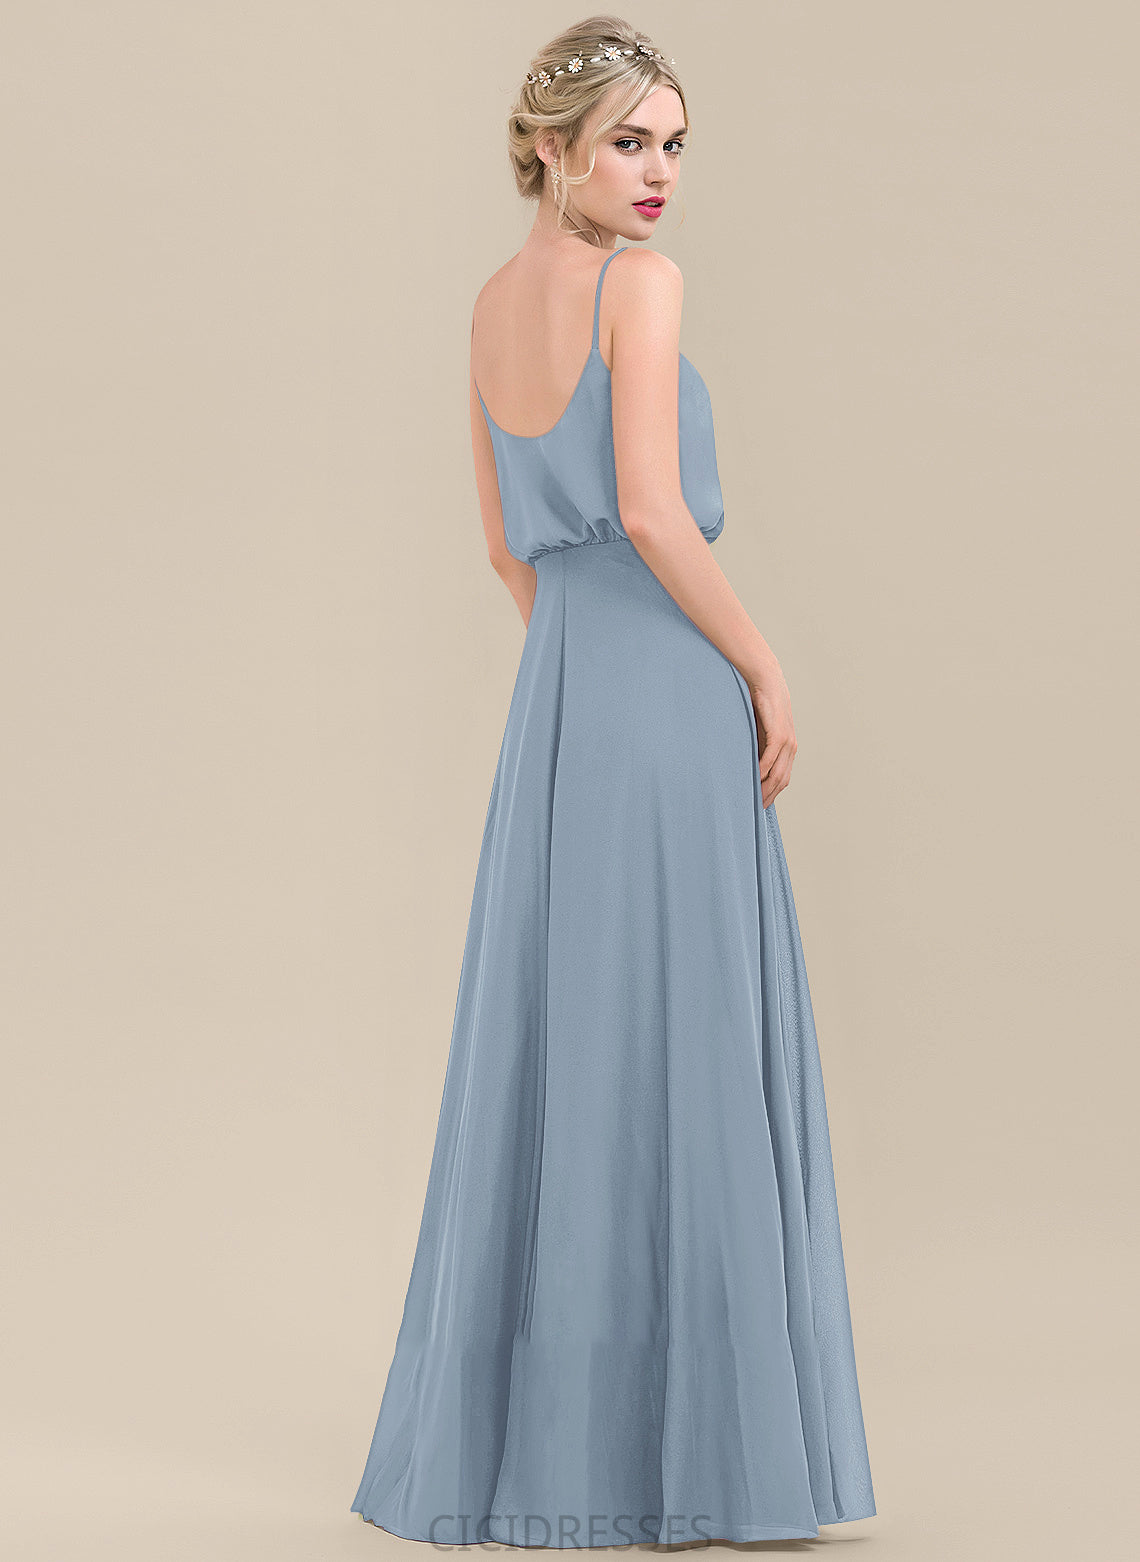 Length A-Line Neckline SquareNeckline SplitFront Embellishment Silhouette Fabric Floor-Length Kiley V-Neck Natural Waist Bridesmaid Dresses